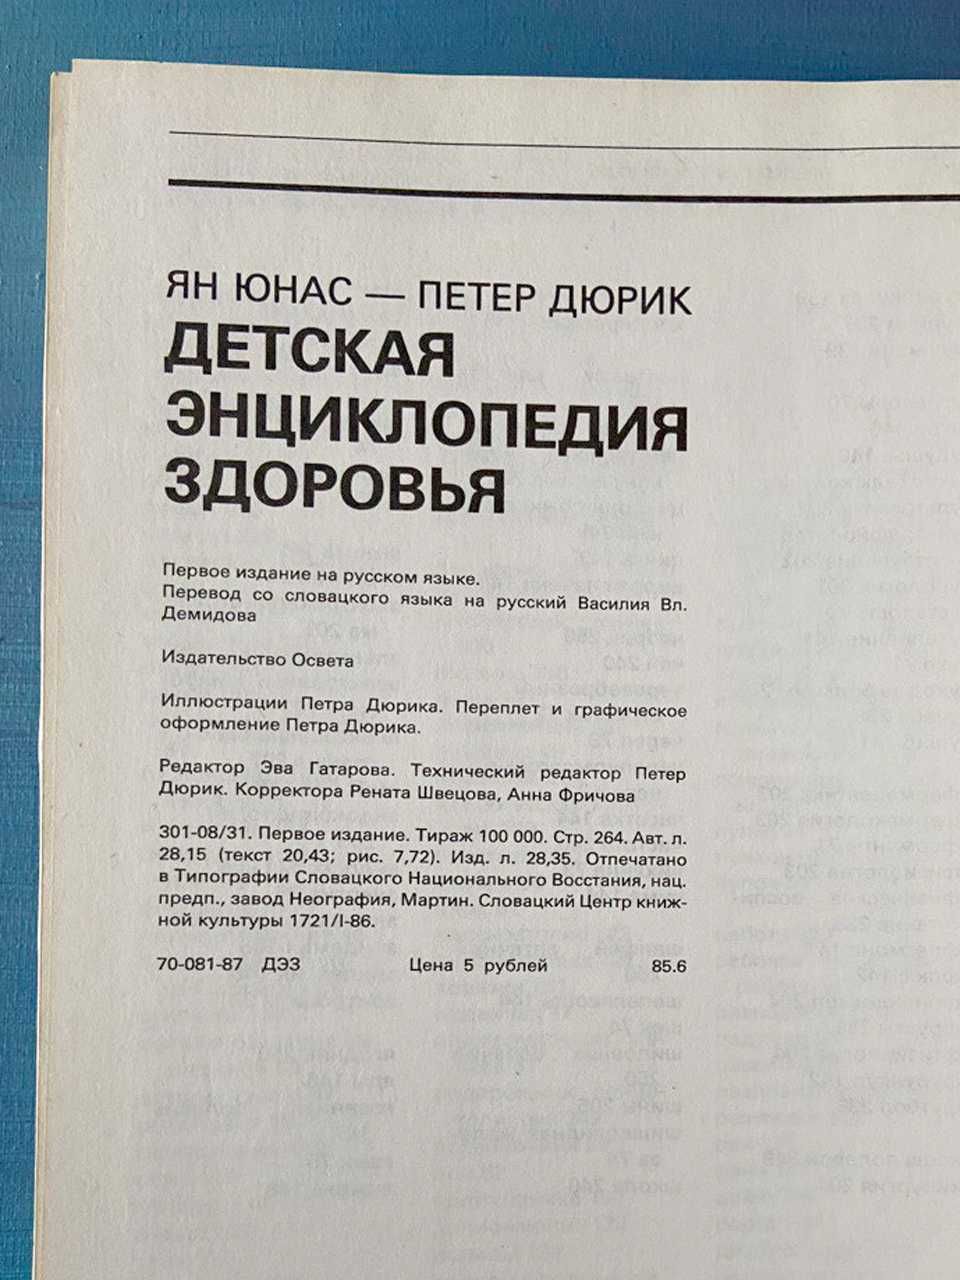 Детская энциклопедия здоровья. Я.Юнас, П.Дюрик, Освета, Словакия, 1984